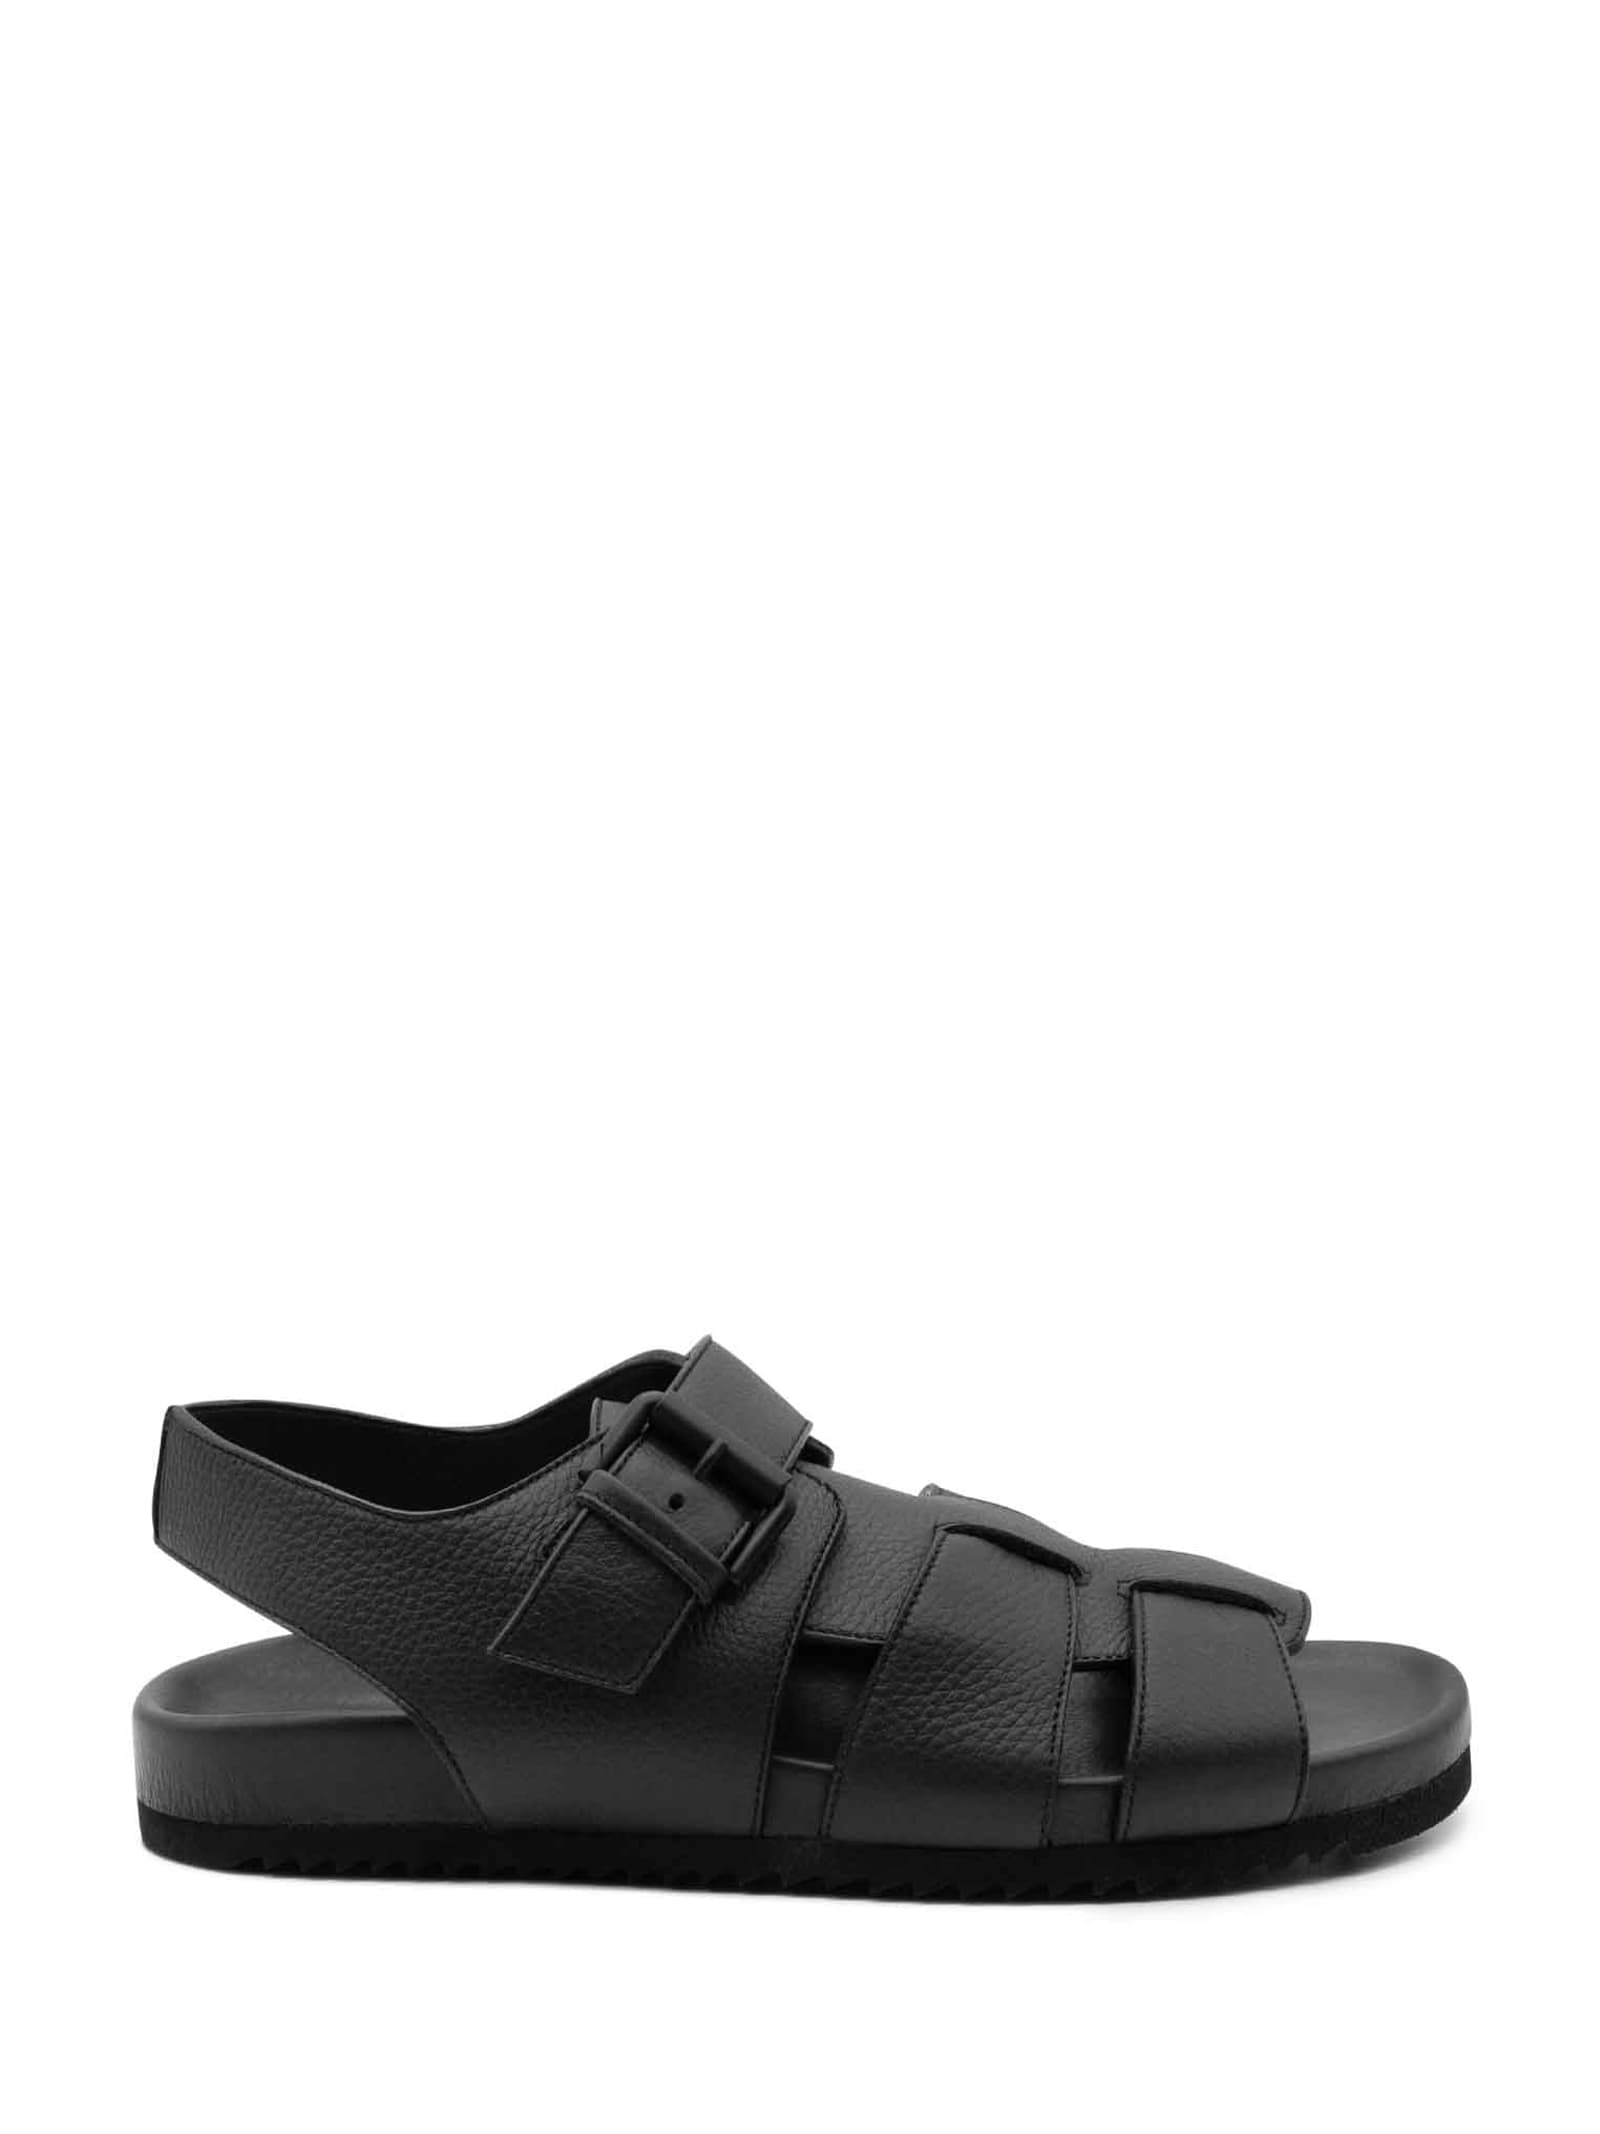 Vic Matie Mens Black Leather Sandal